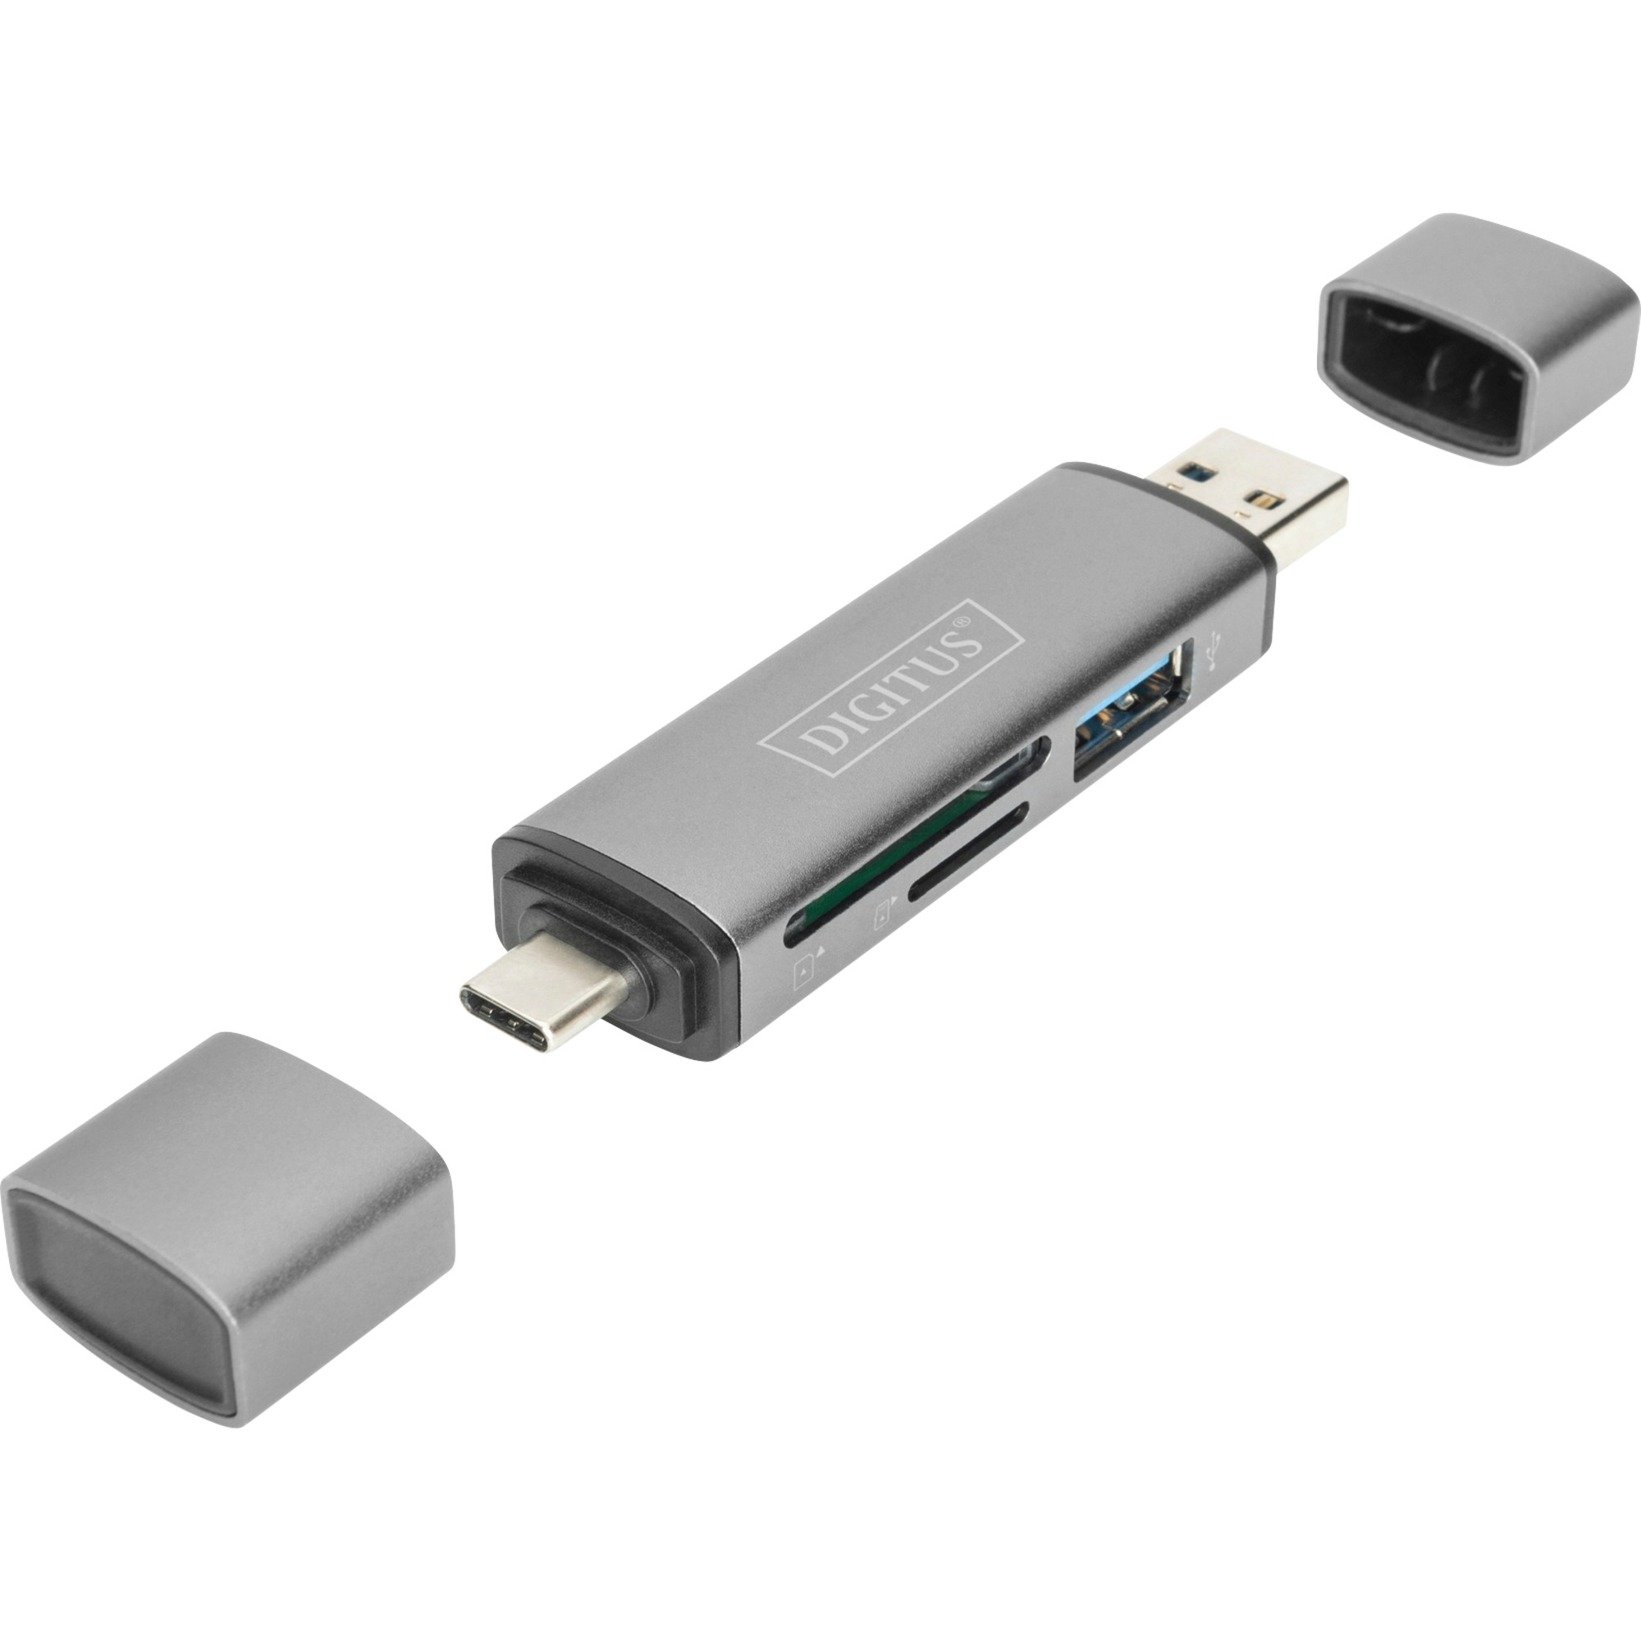 Image of Alternate - Dual Card Reader USB-C / USB 3.0, OTG, Kartenleser online einkaufen bei Alternate